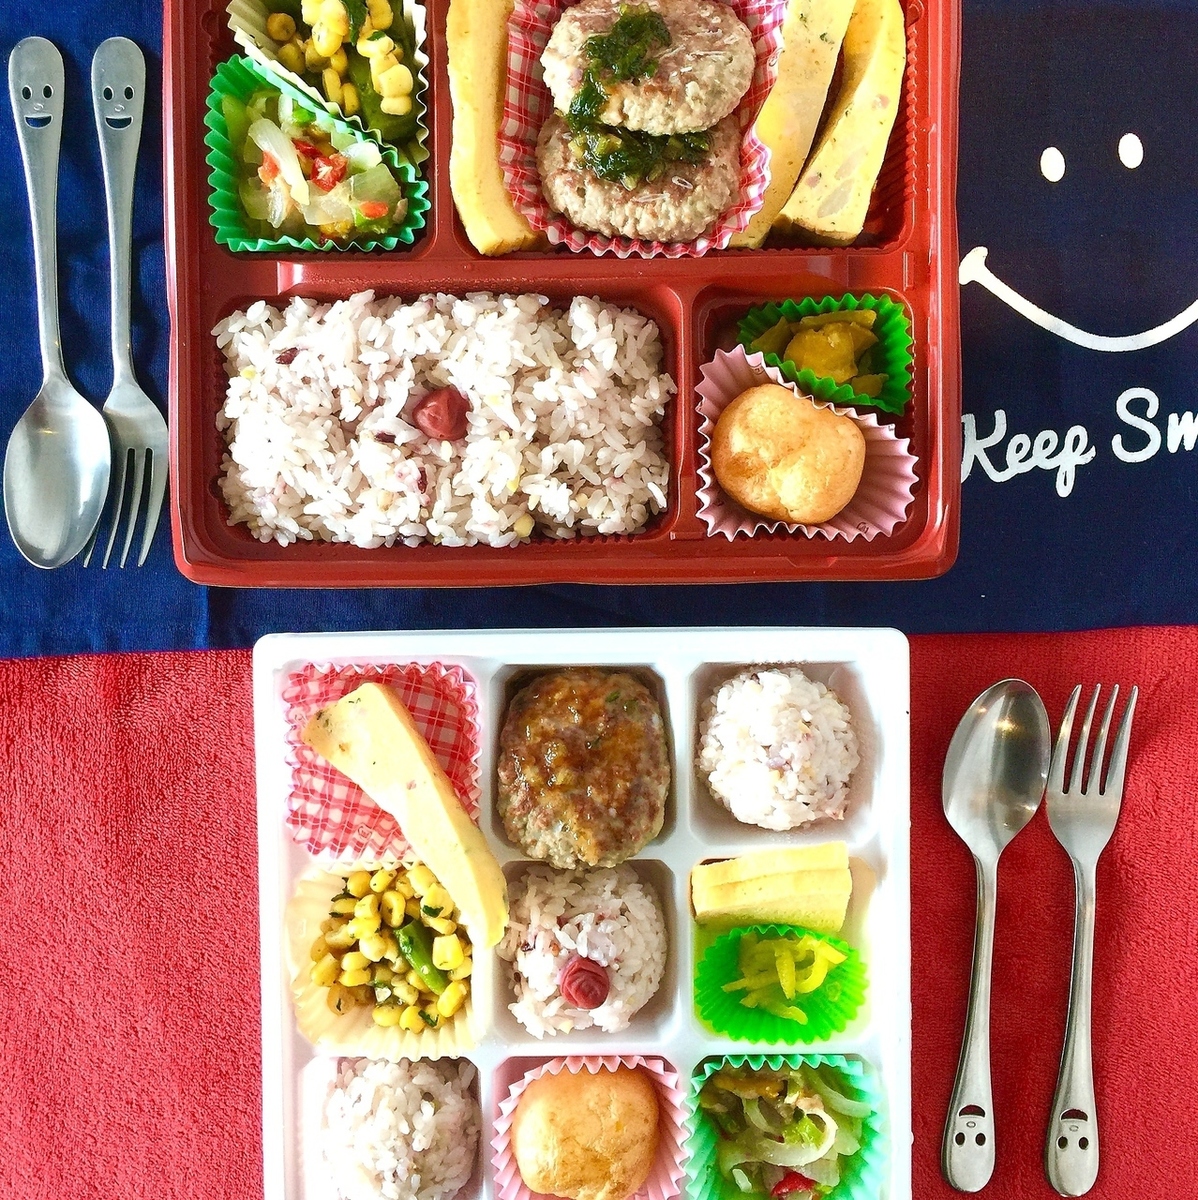 Healthy lunch arrangement example